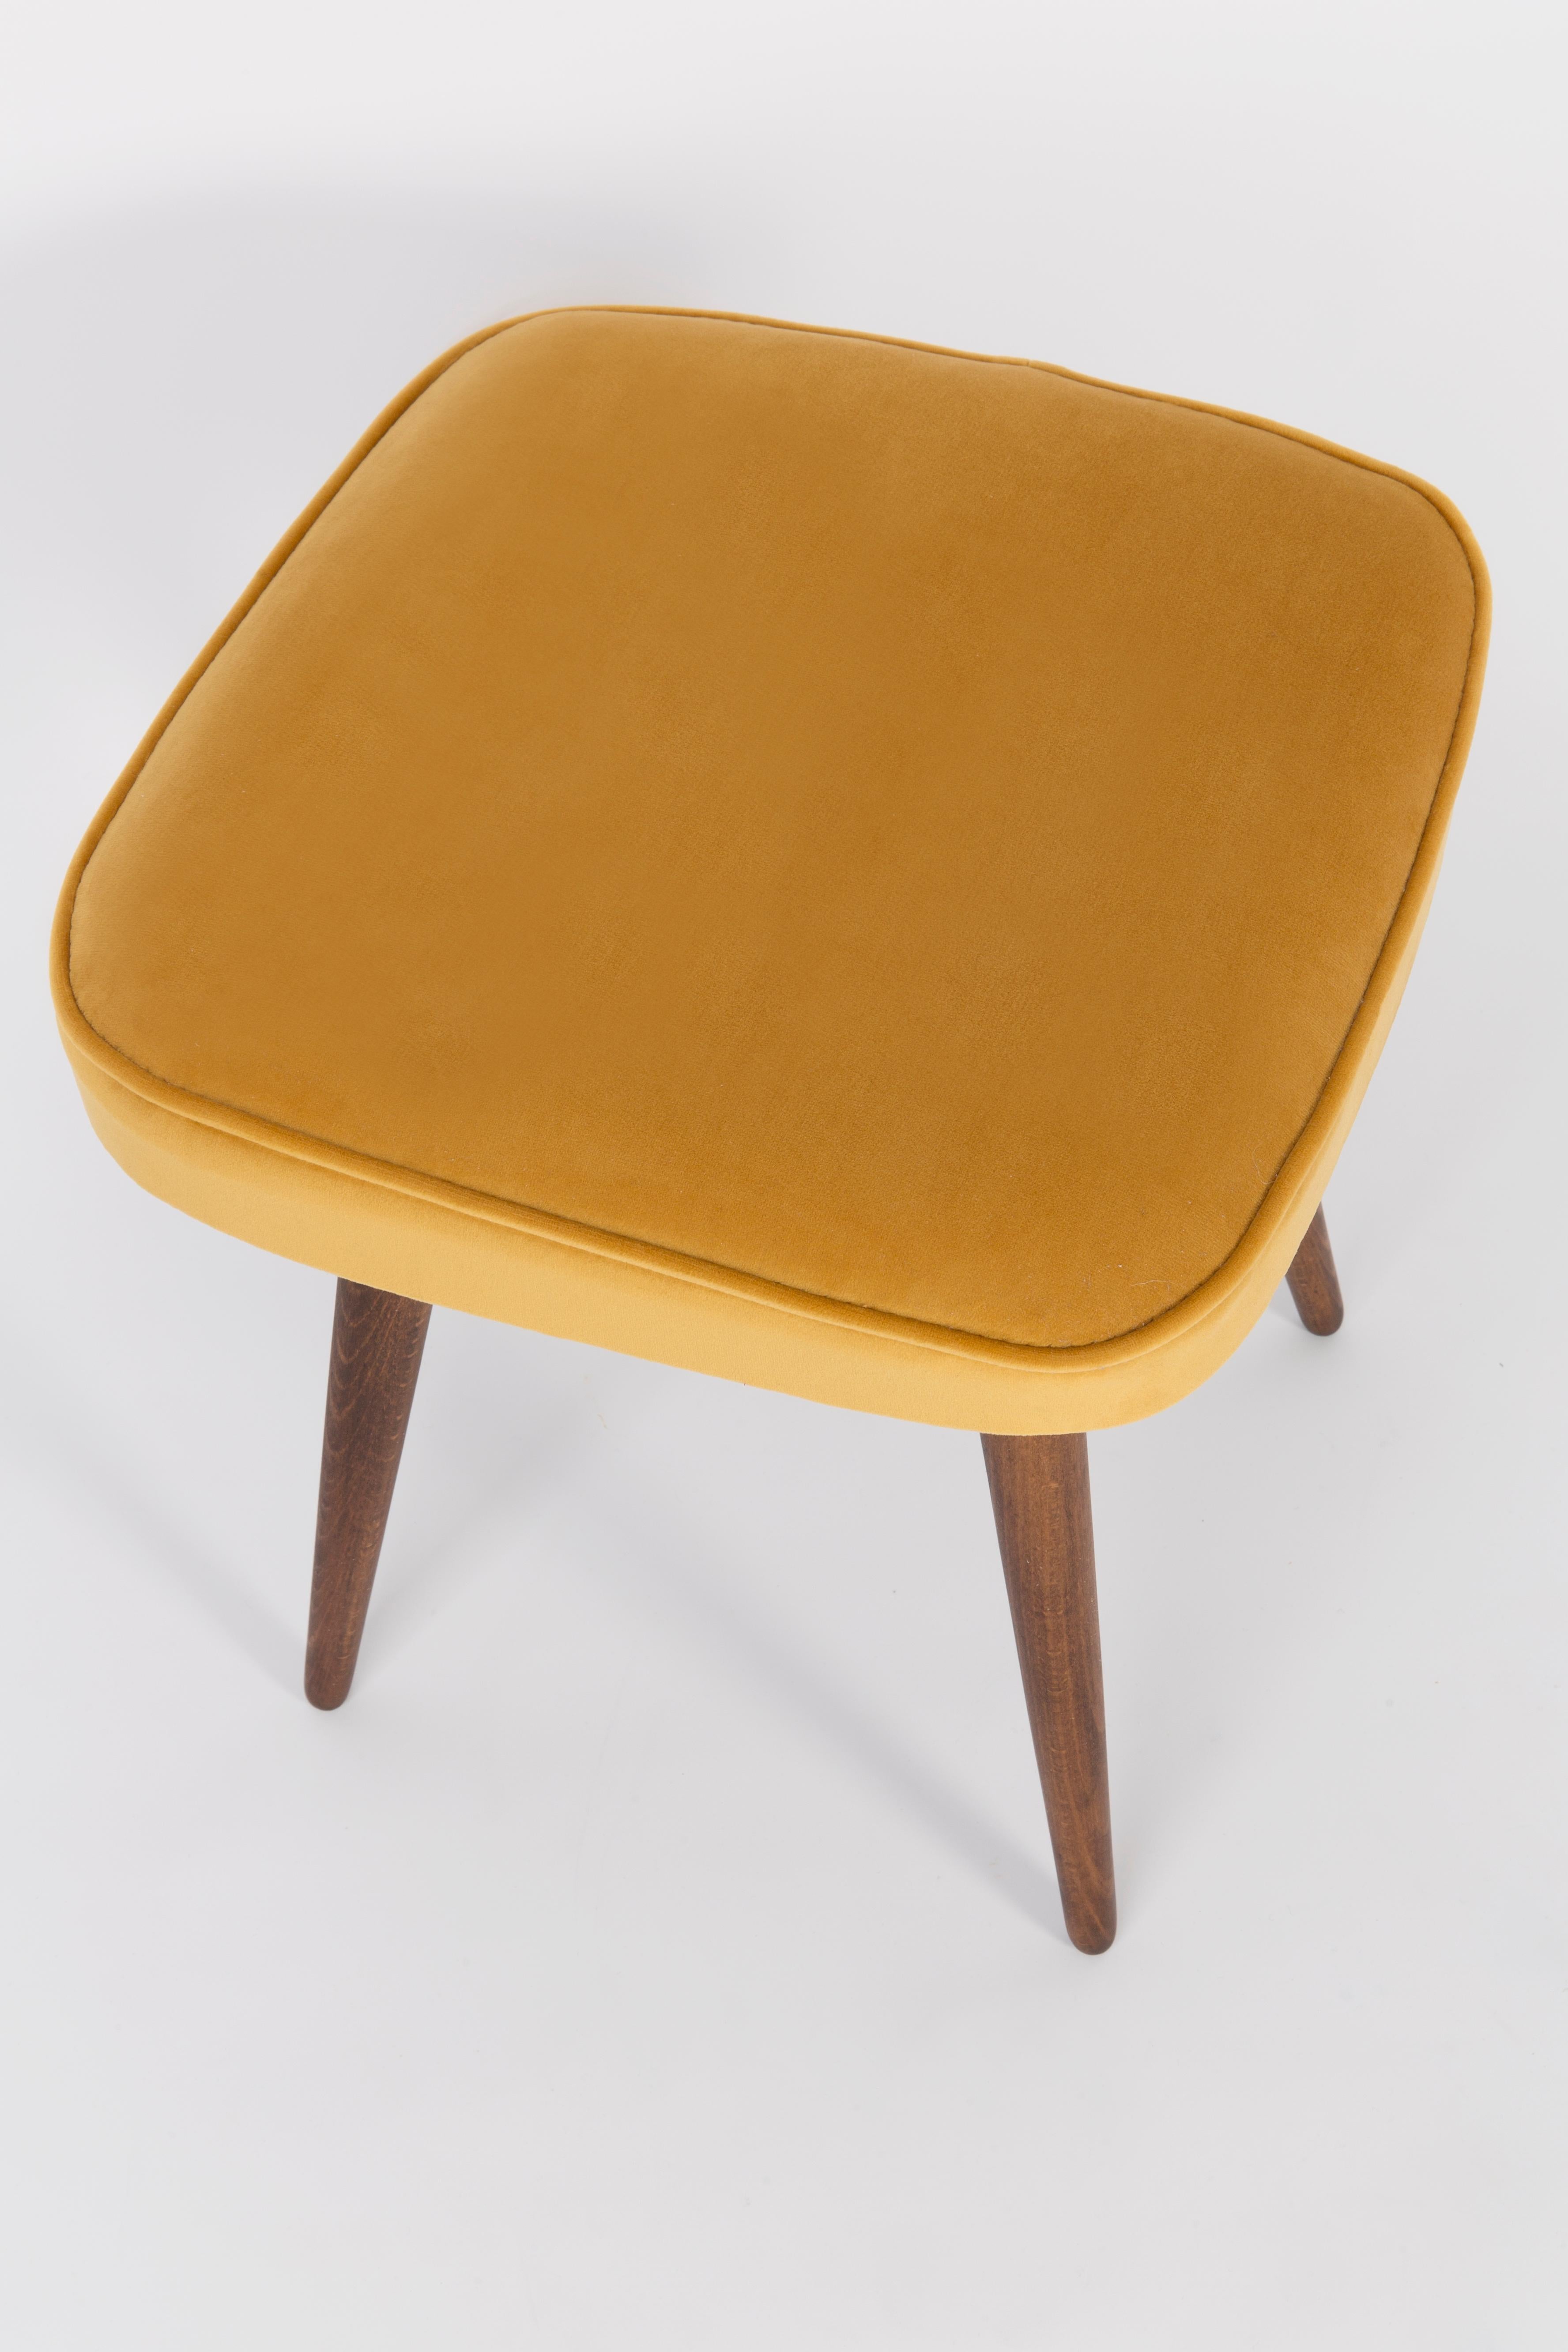 Tabouret du tournant des années 1960 et 1970. Magnifique revêtement en velours moutarde. Le tabouret se compose d'une partie rembourrée, d'une assise et de pieds en bois rétrécissant vers le bas, caractéristiques du style des années 1960. Nous